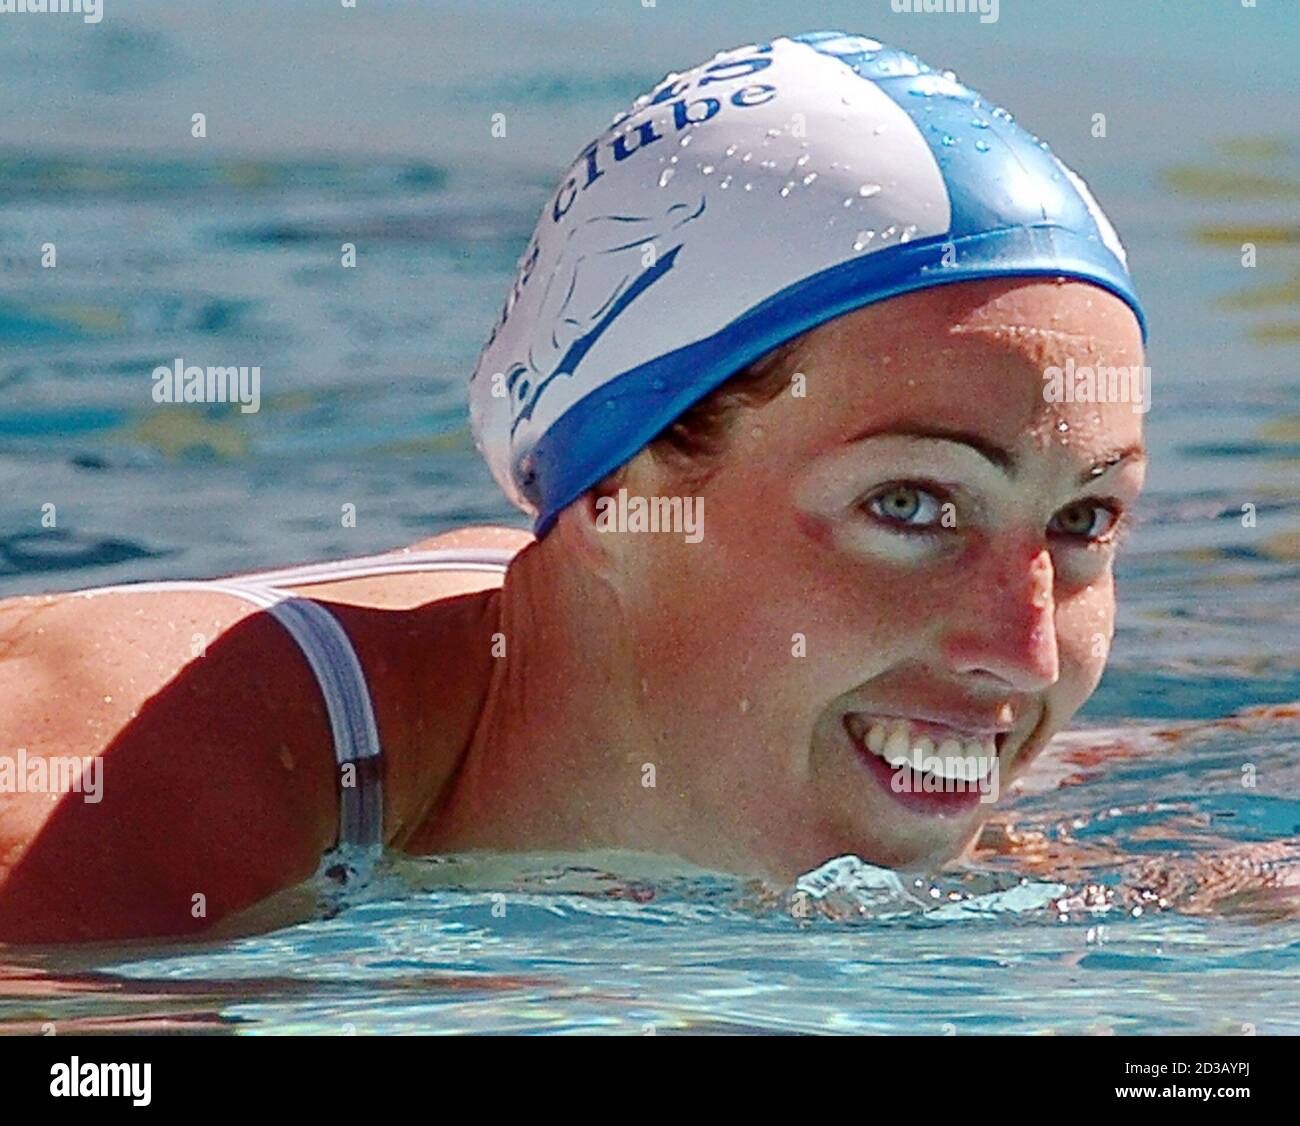 El nadador sueco Therese Alshammar sonríe después de ganar la final de 50 m  libre para el equipo de Minas Tennis Club en el campeonato nacional de  natación de Brasil en Belo